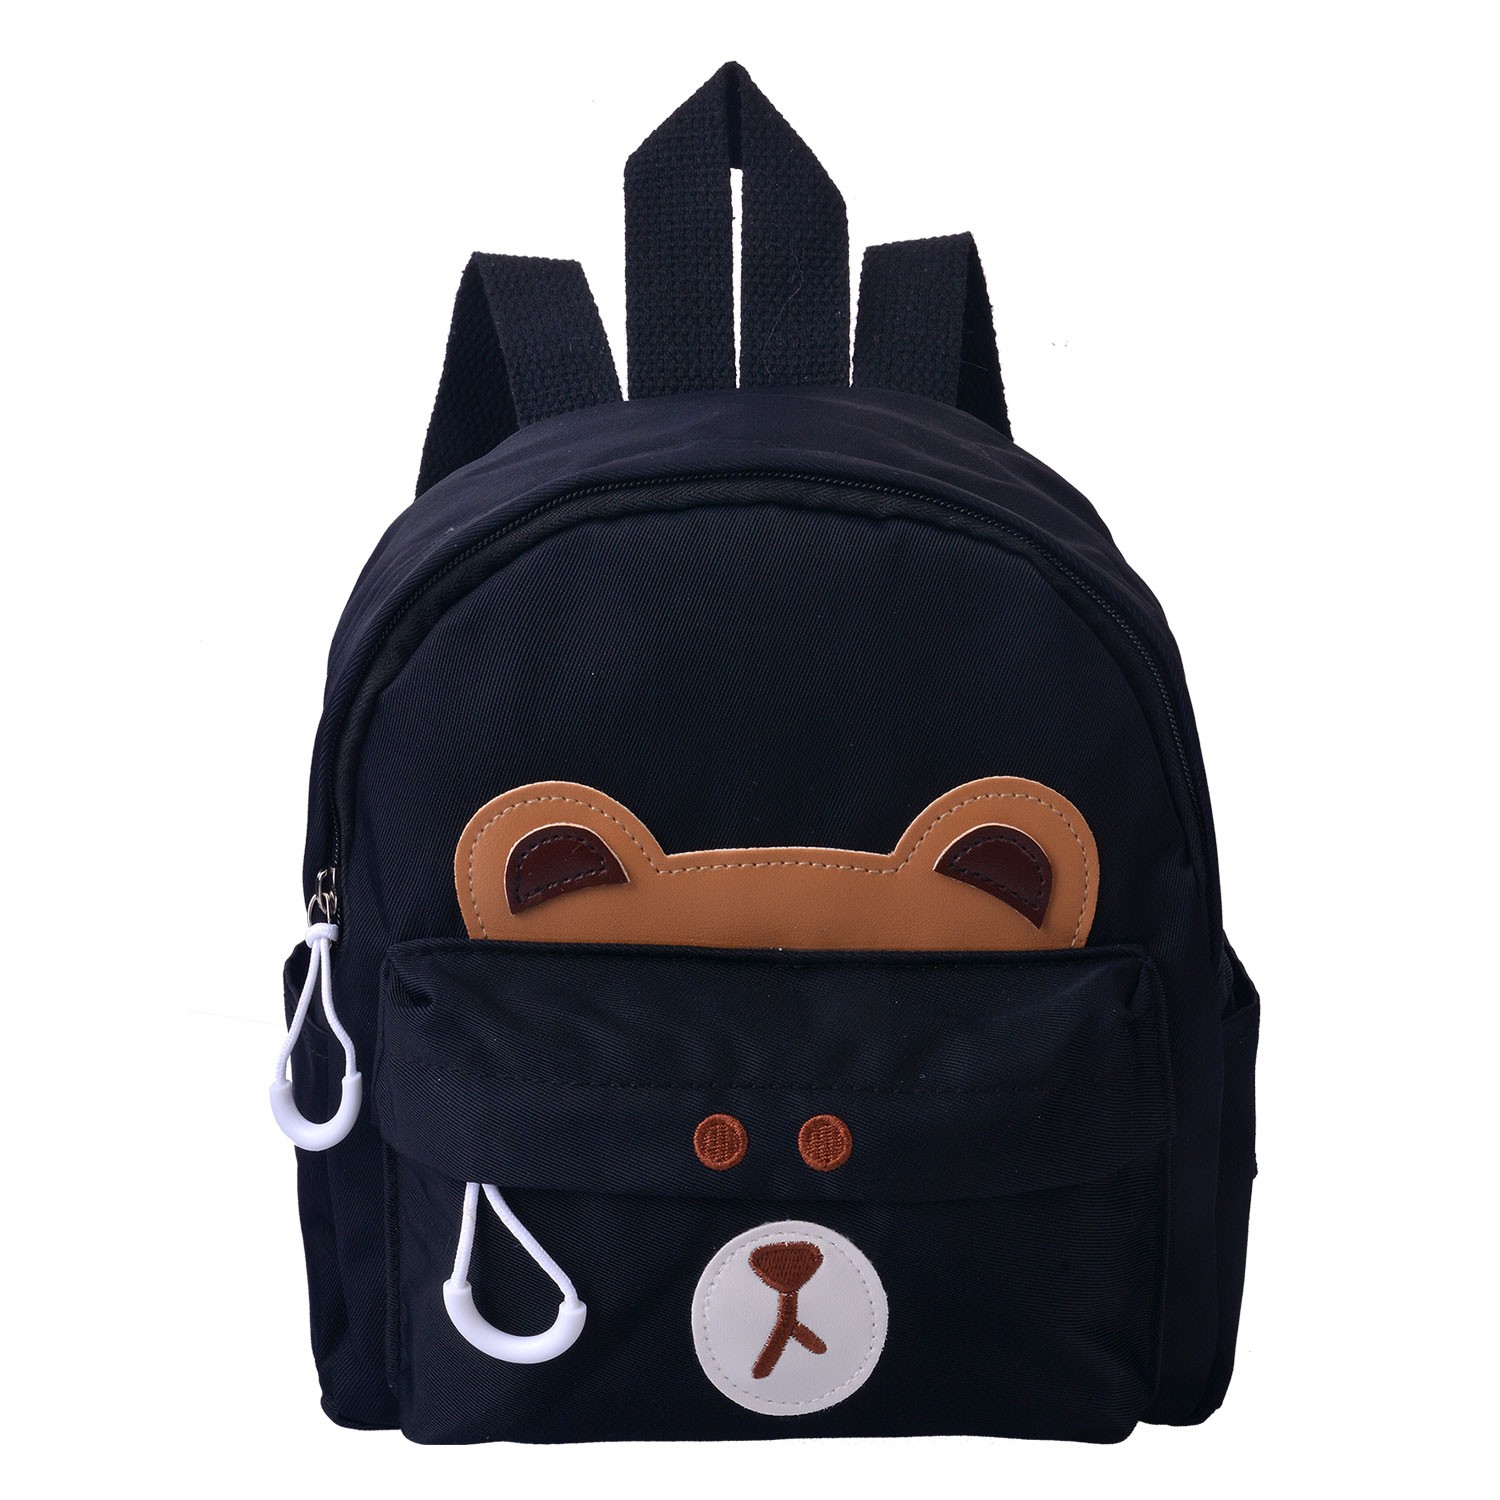 Černý dětský batoh s medvídkem - 21*9*23 cm MLLLBAG0022Z